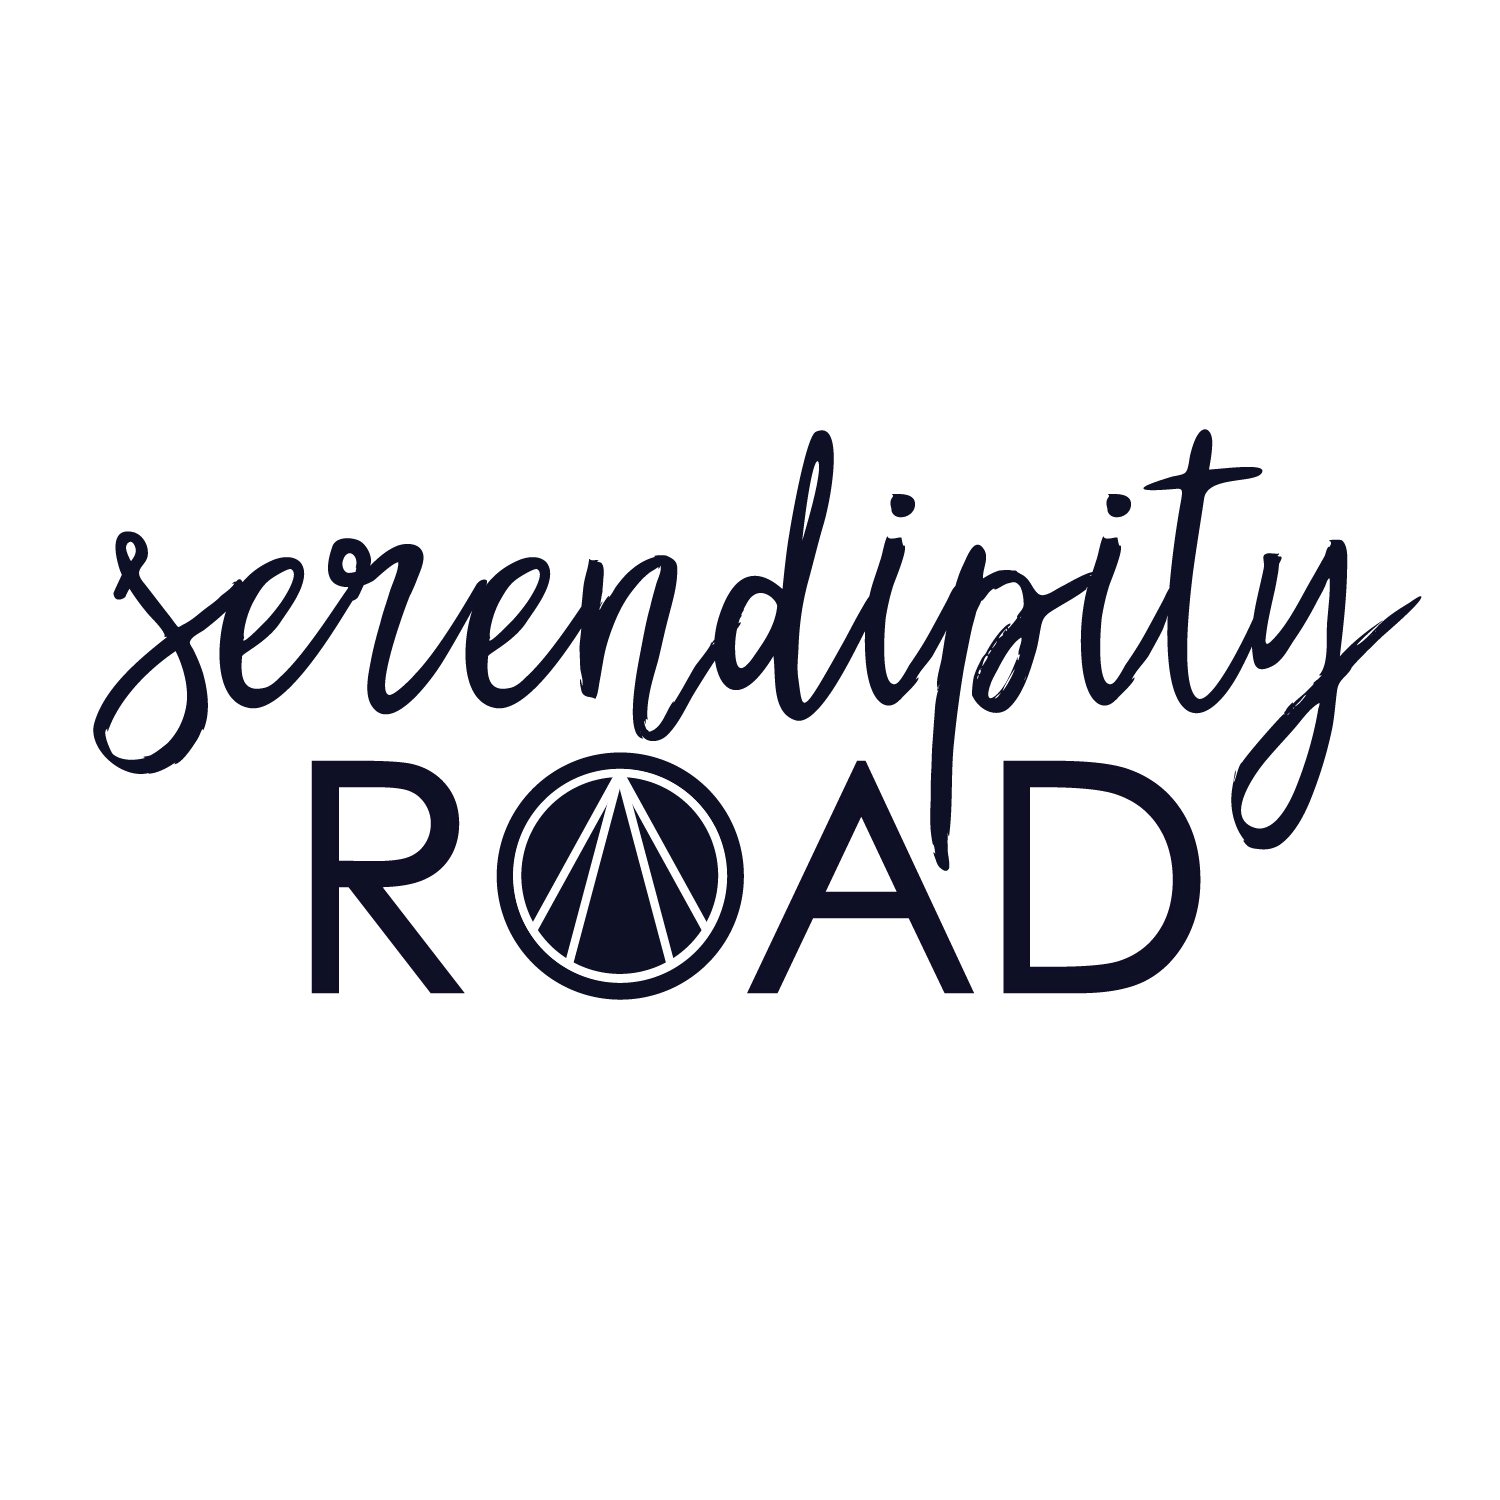 Serendipity Road (Copy) (Copy)